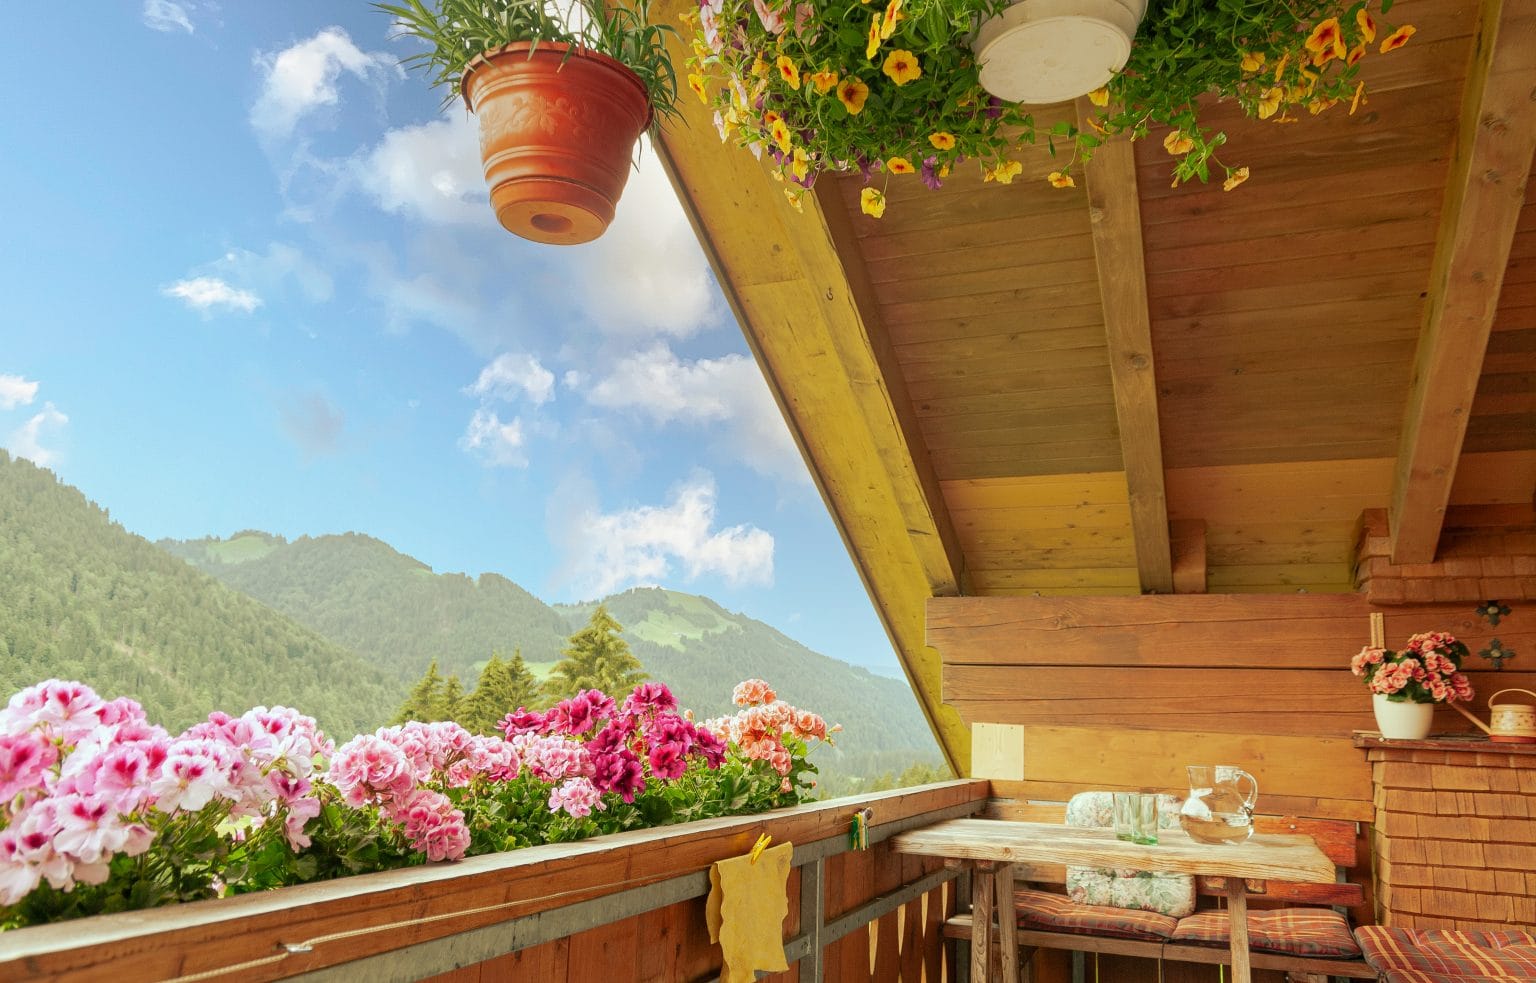 Ausblicke von einem Haus Anemone Balkon mit farbenprächtigen Blumen auf die umgebende Bergwelt und den Himmel.